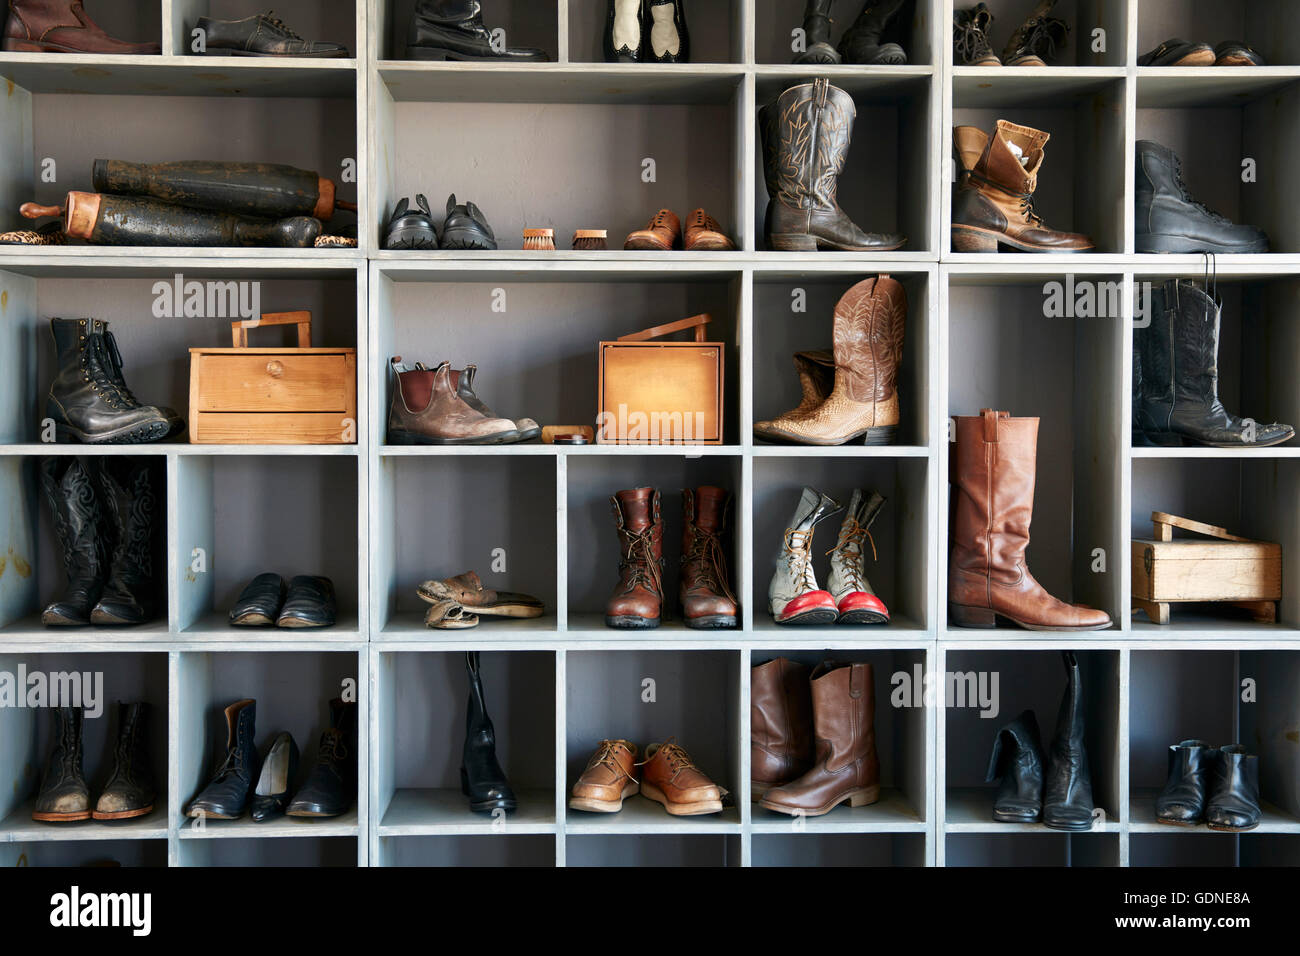 Visualizzazione di stivali e scarpe su scaffali in tradizionale negozio di scarpe Foto Stock